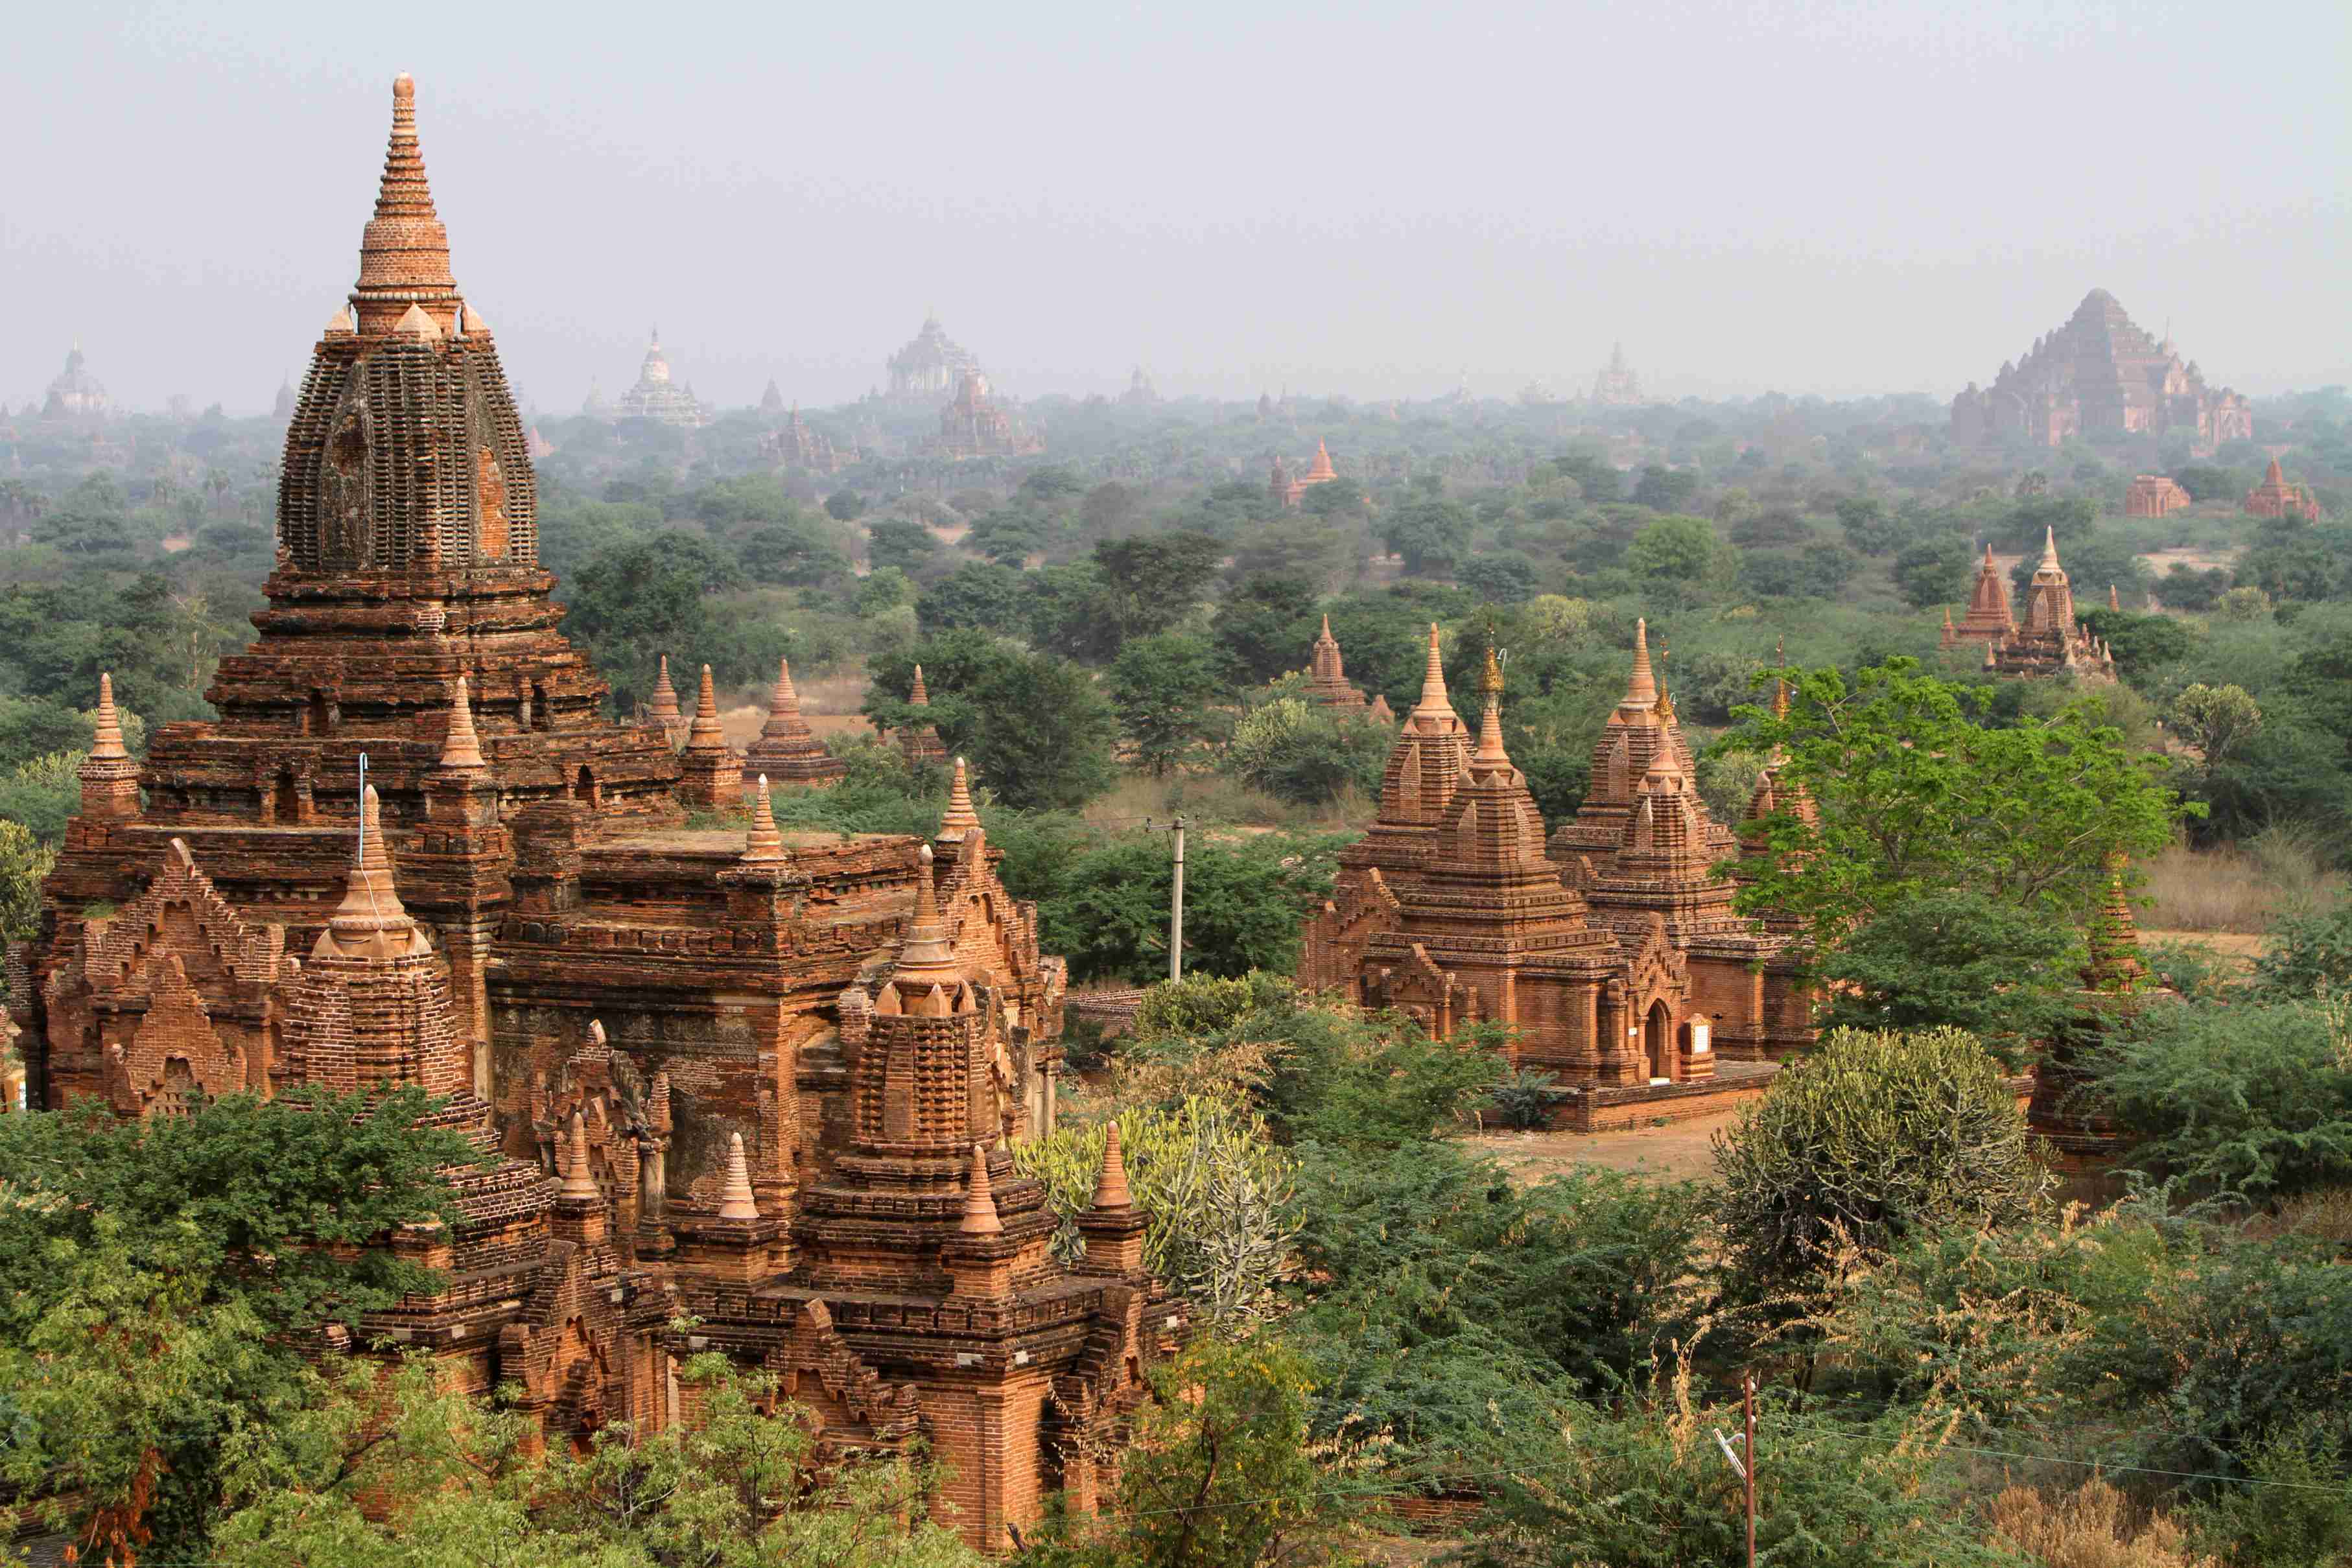 Le site de Bagan constitué de quelque 2000 fondations religieuses étendues sur plus de 40 km2.